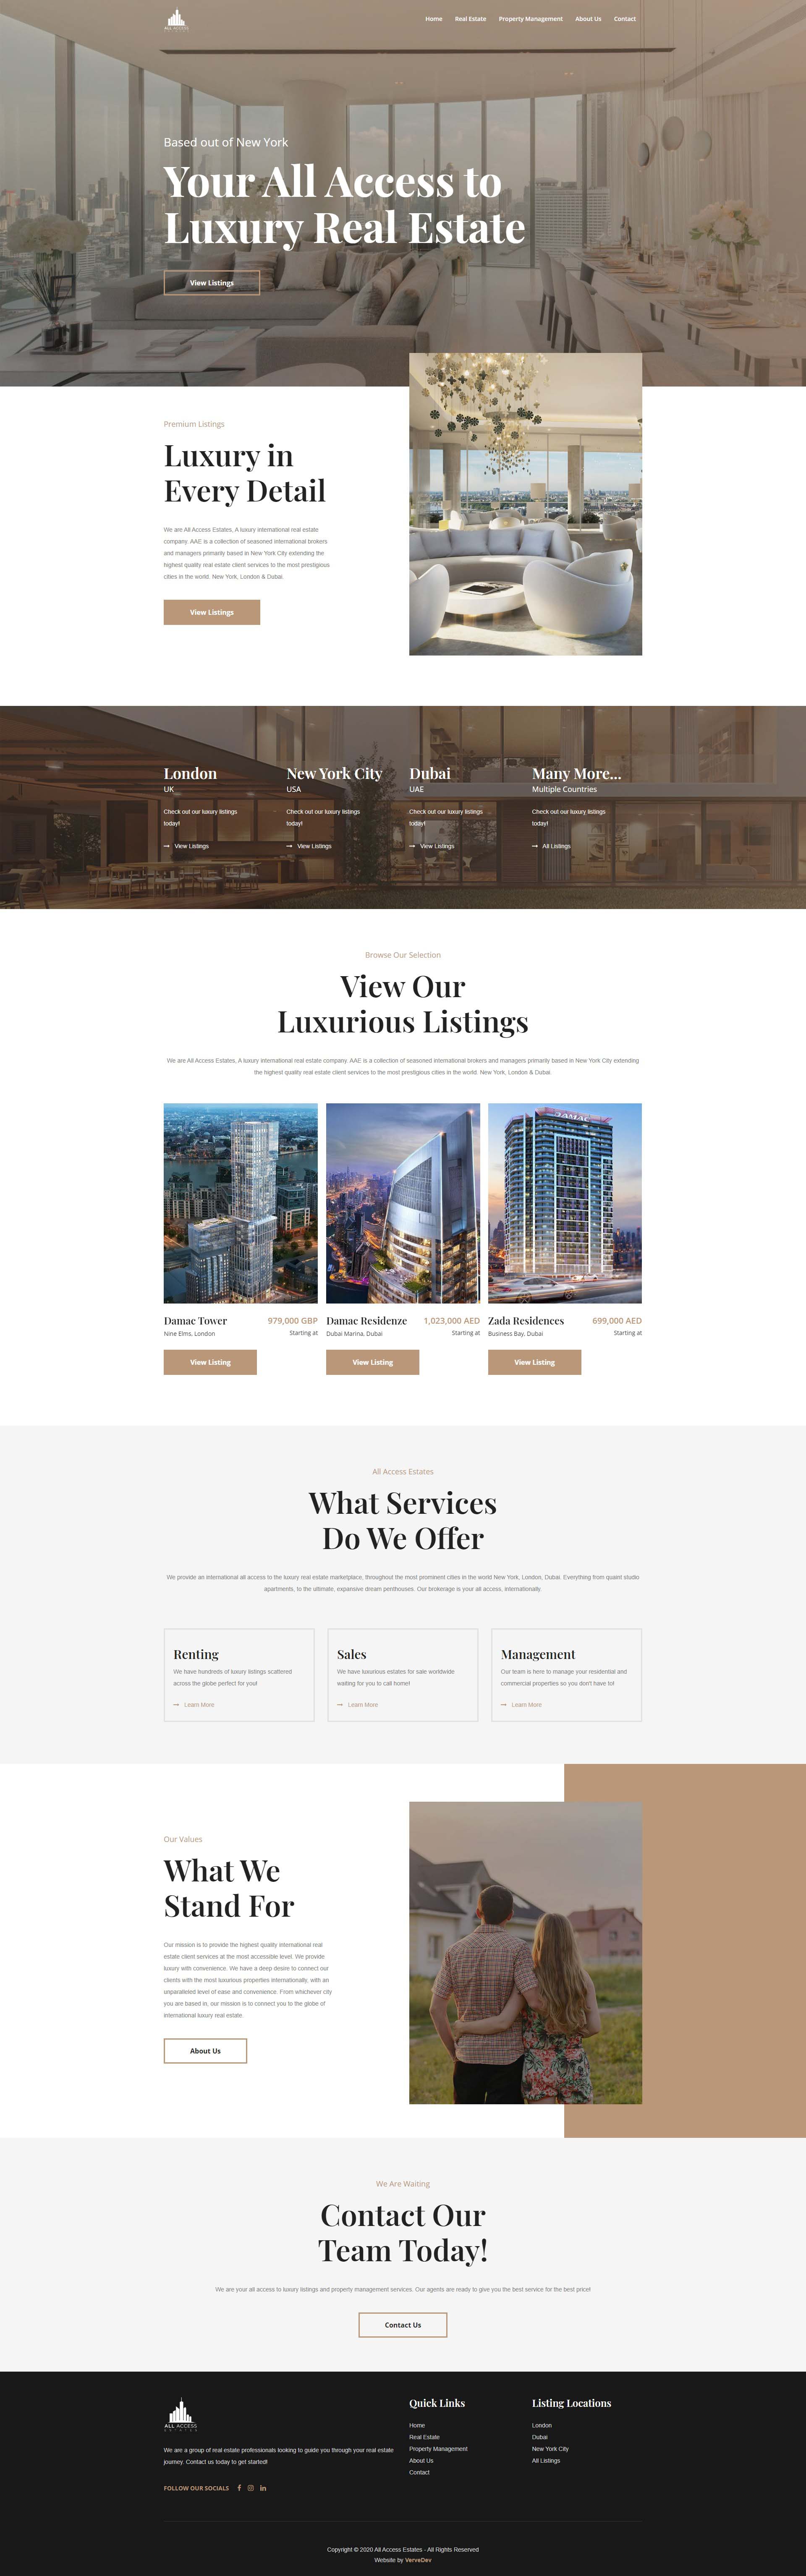 Kingston-website-design-portfolio-2